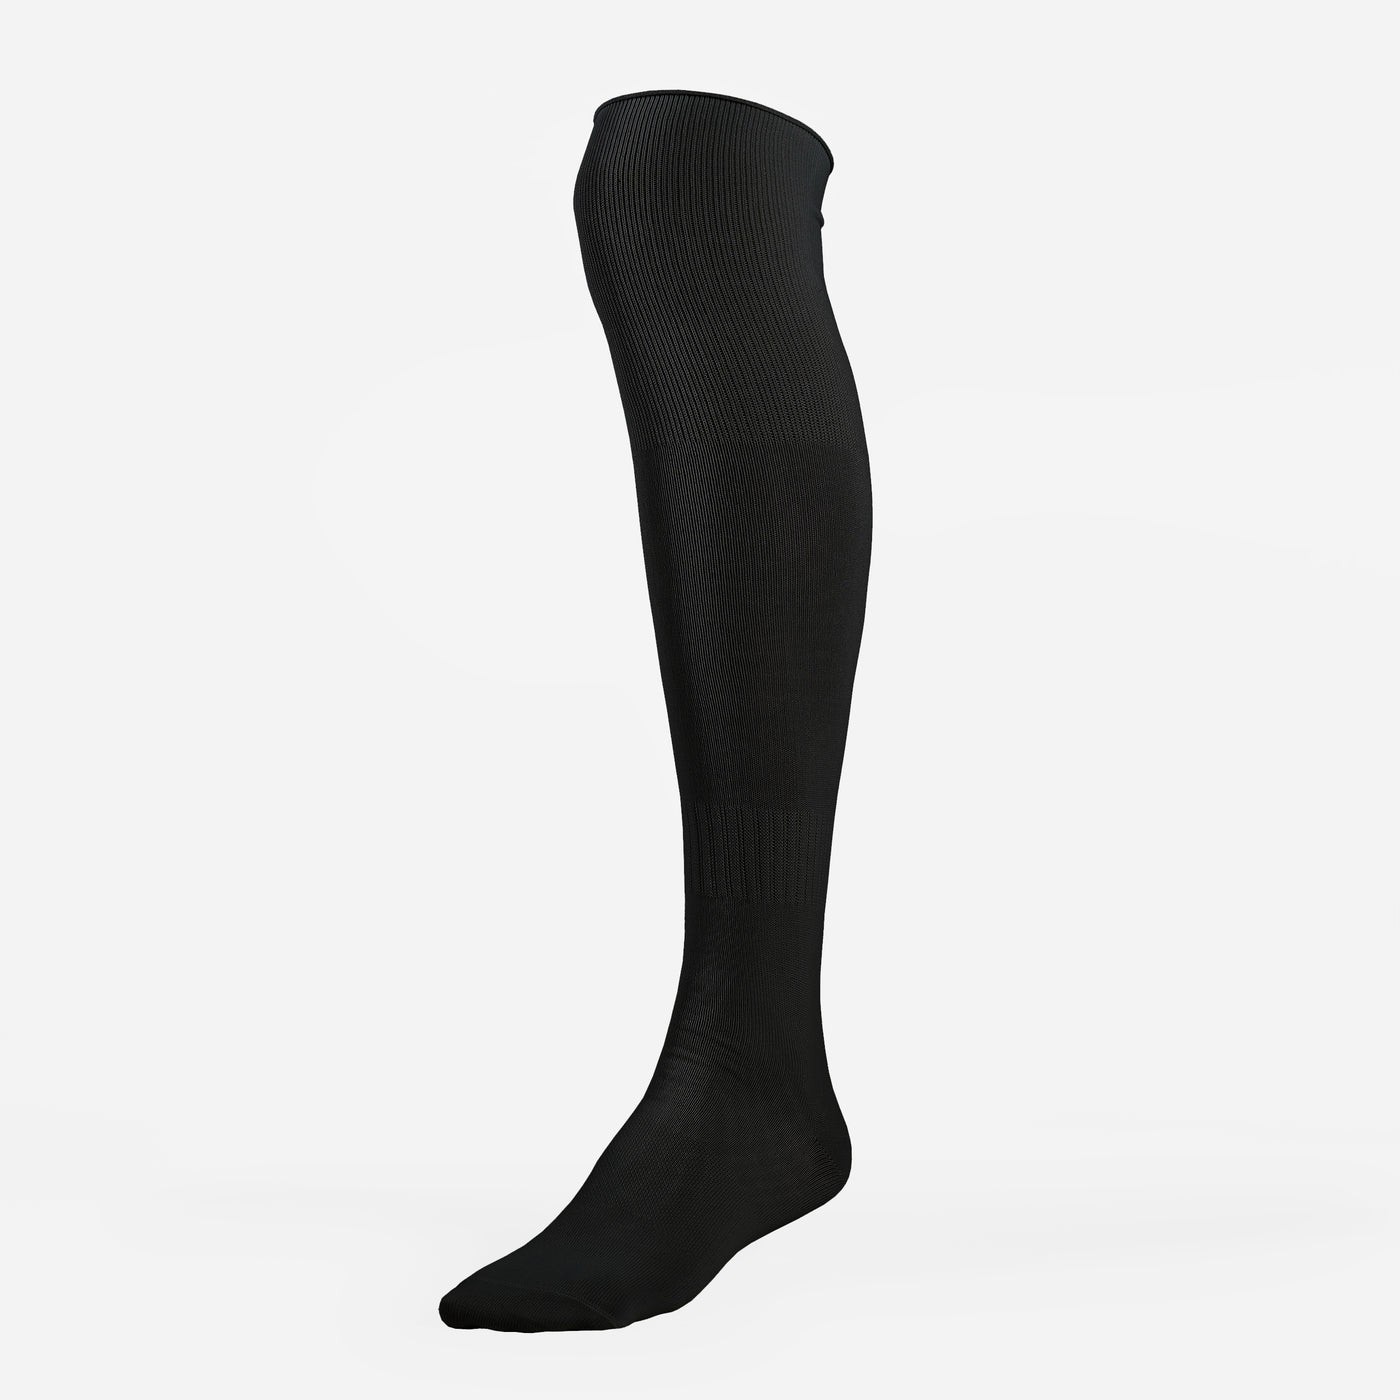 Basic Black Baseball Knee-High Socks